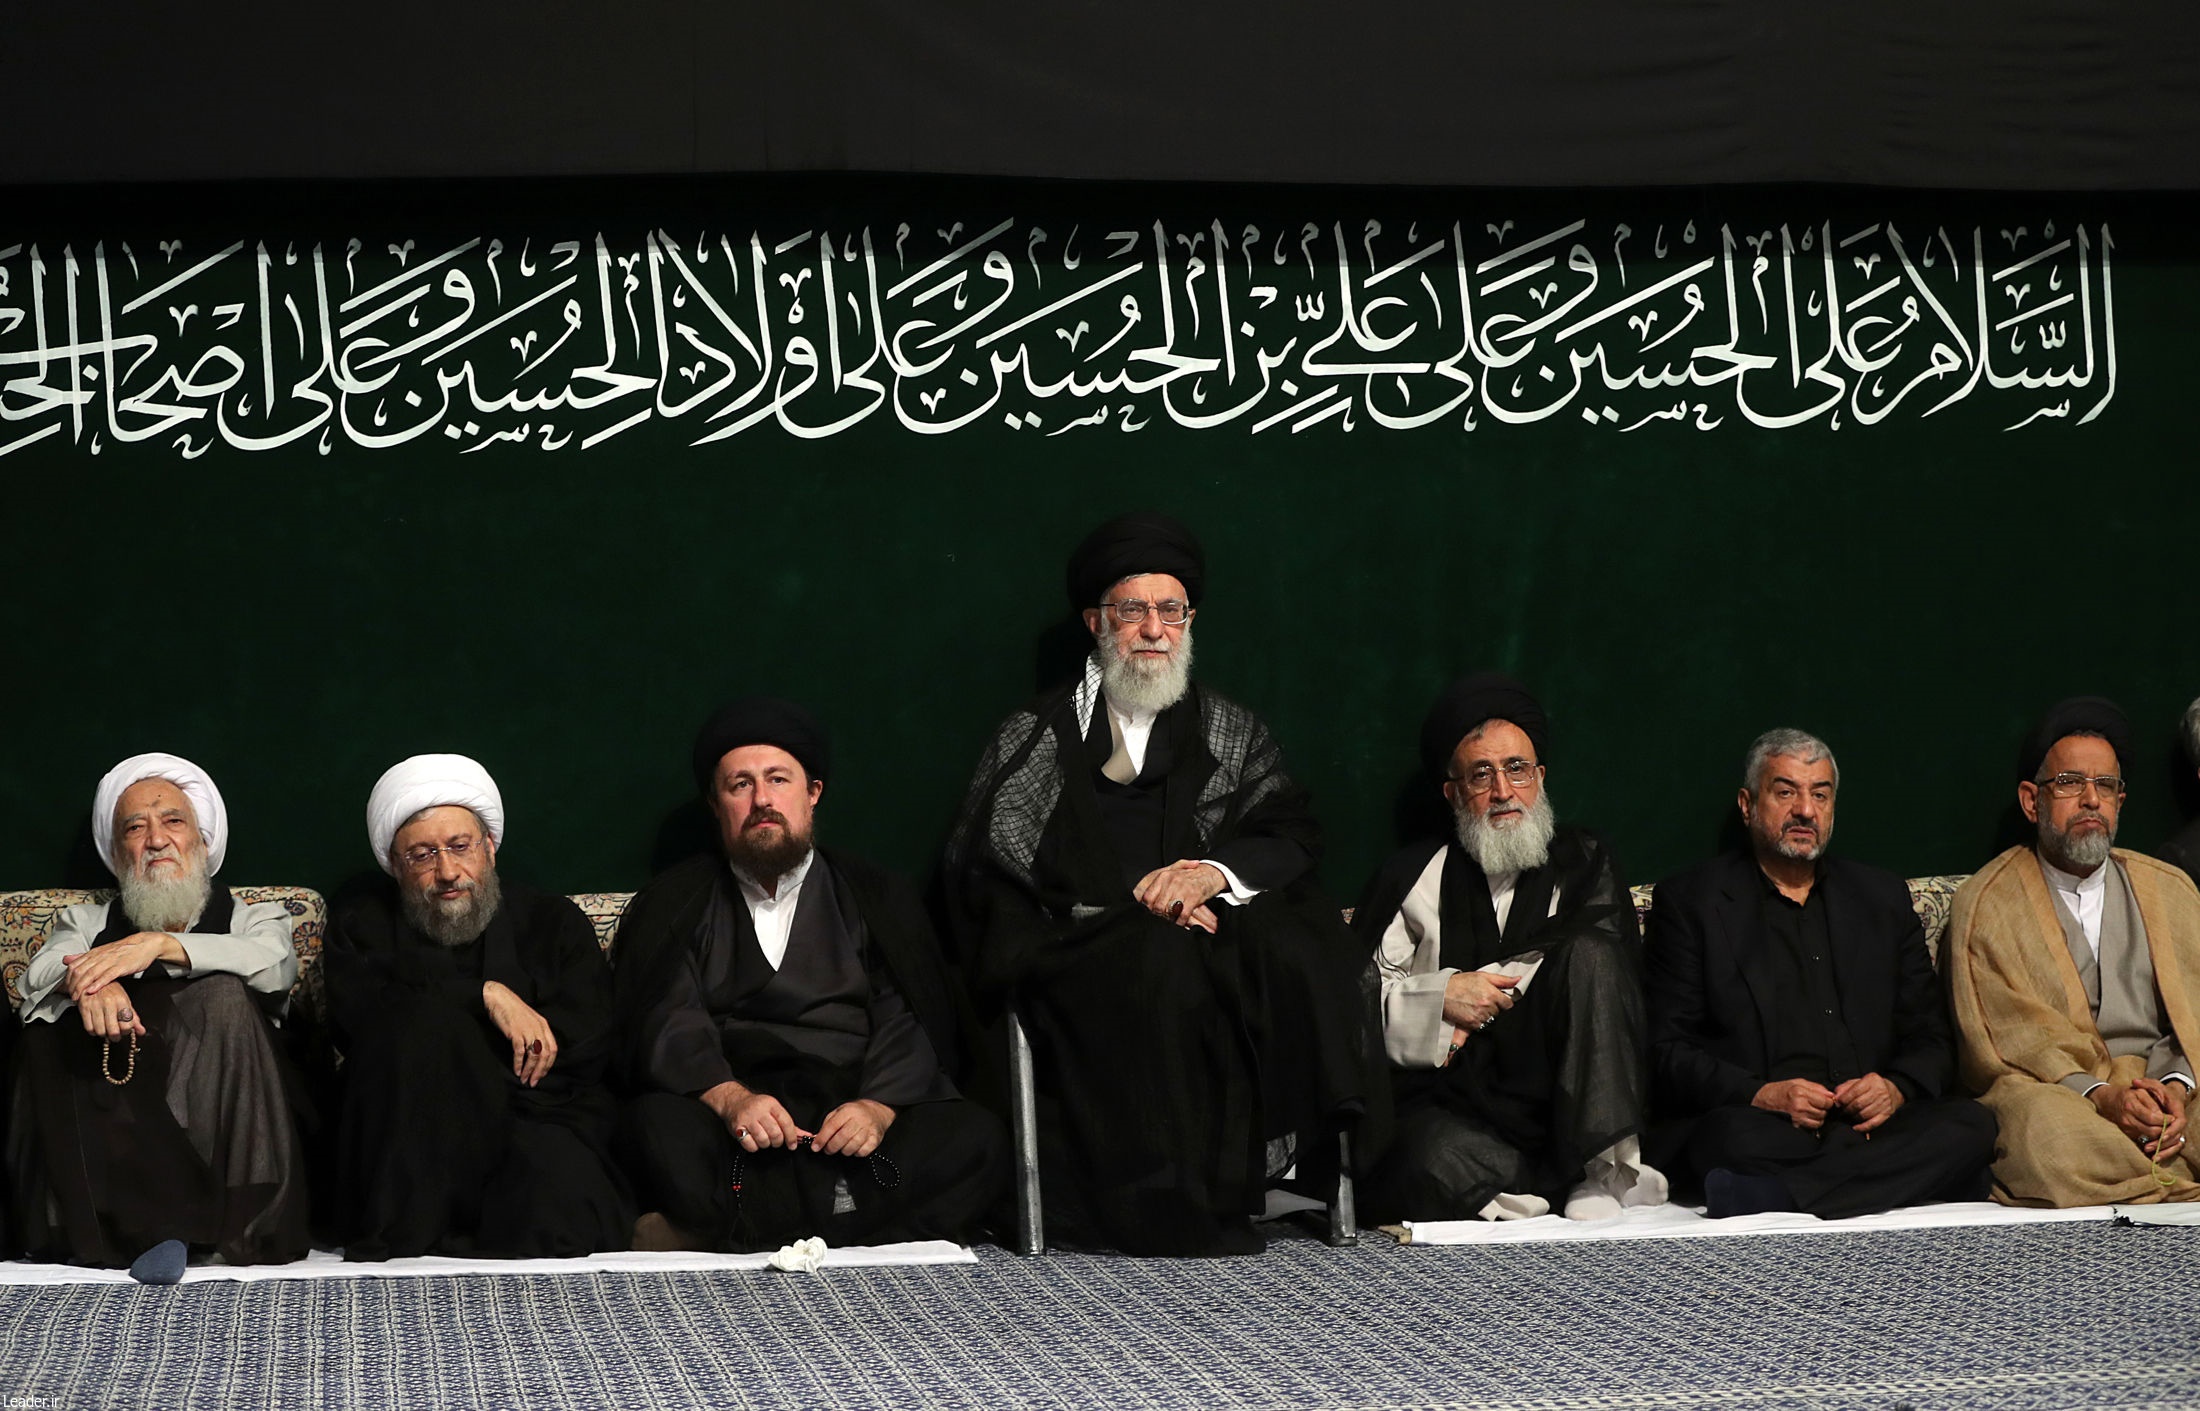 بالصور.. الليلة الأخيرة من مجلس العزاء الحسيني بحضور الإمام الخامنئي 